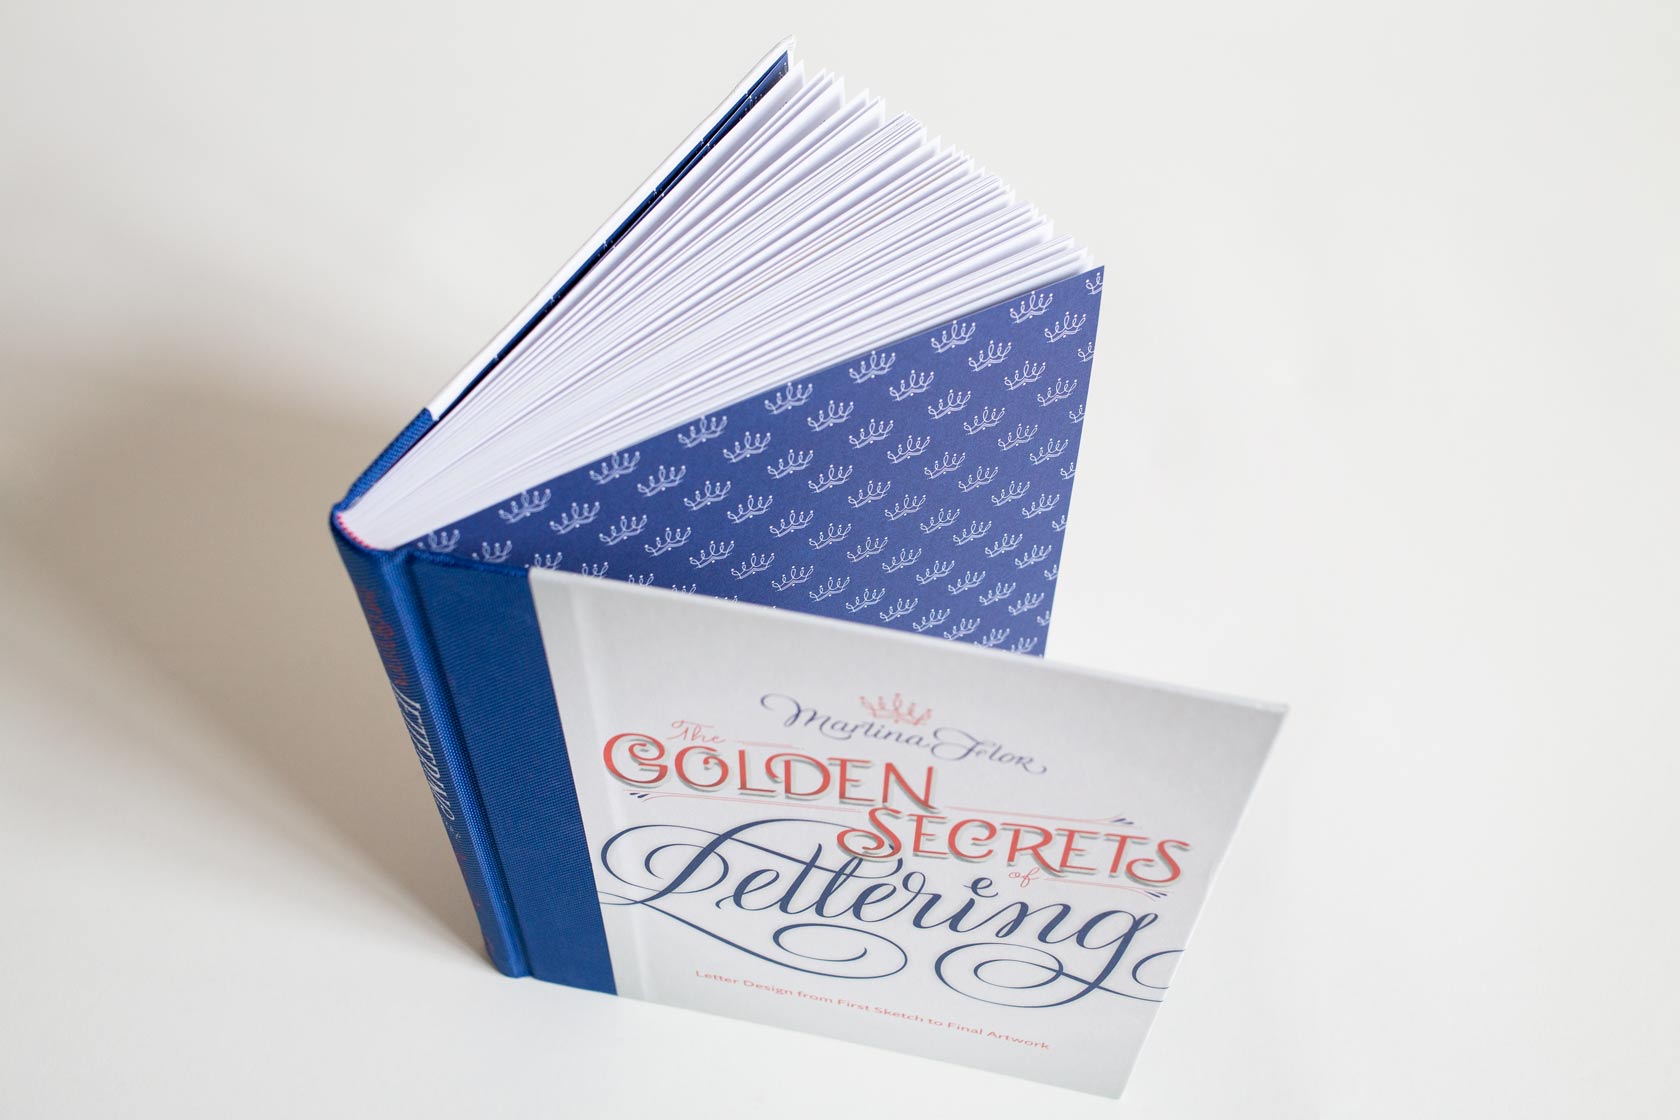 The Golden Secrets of Lettering Martina Flor